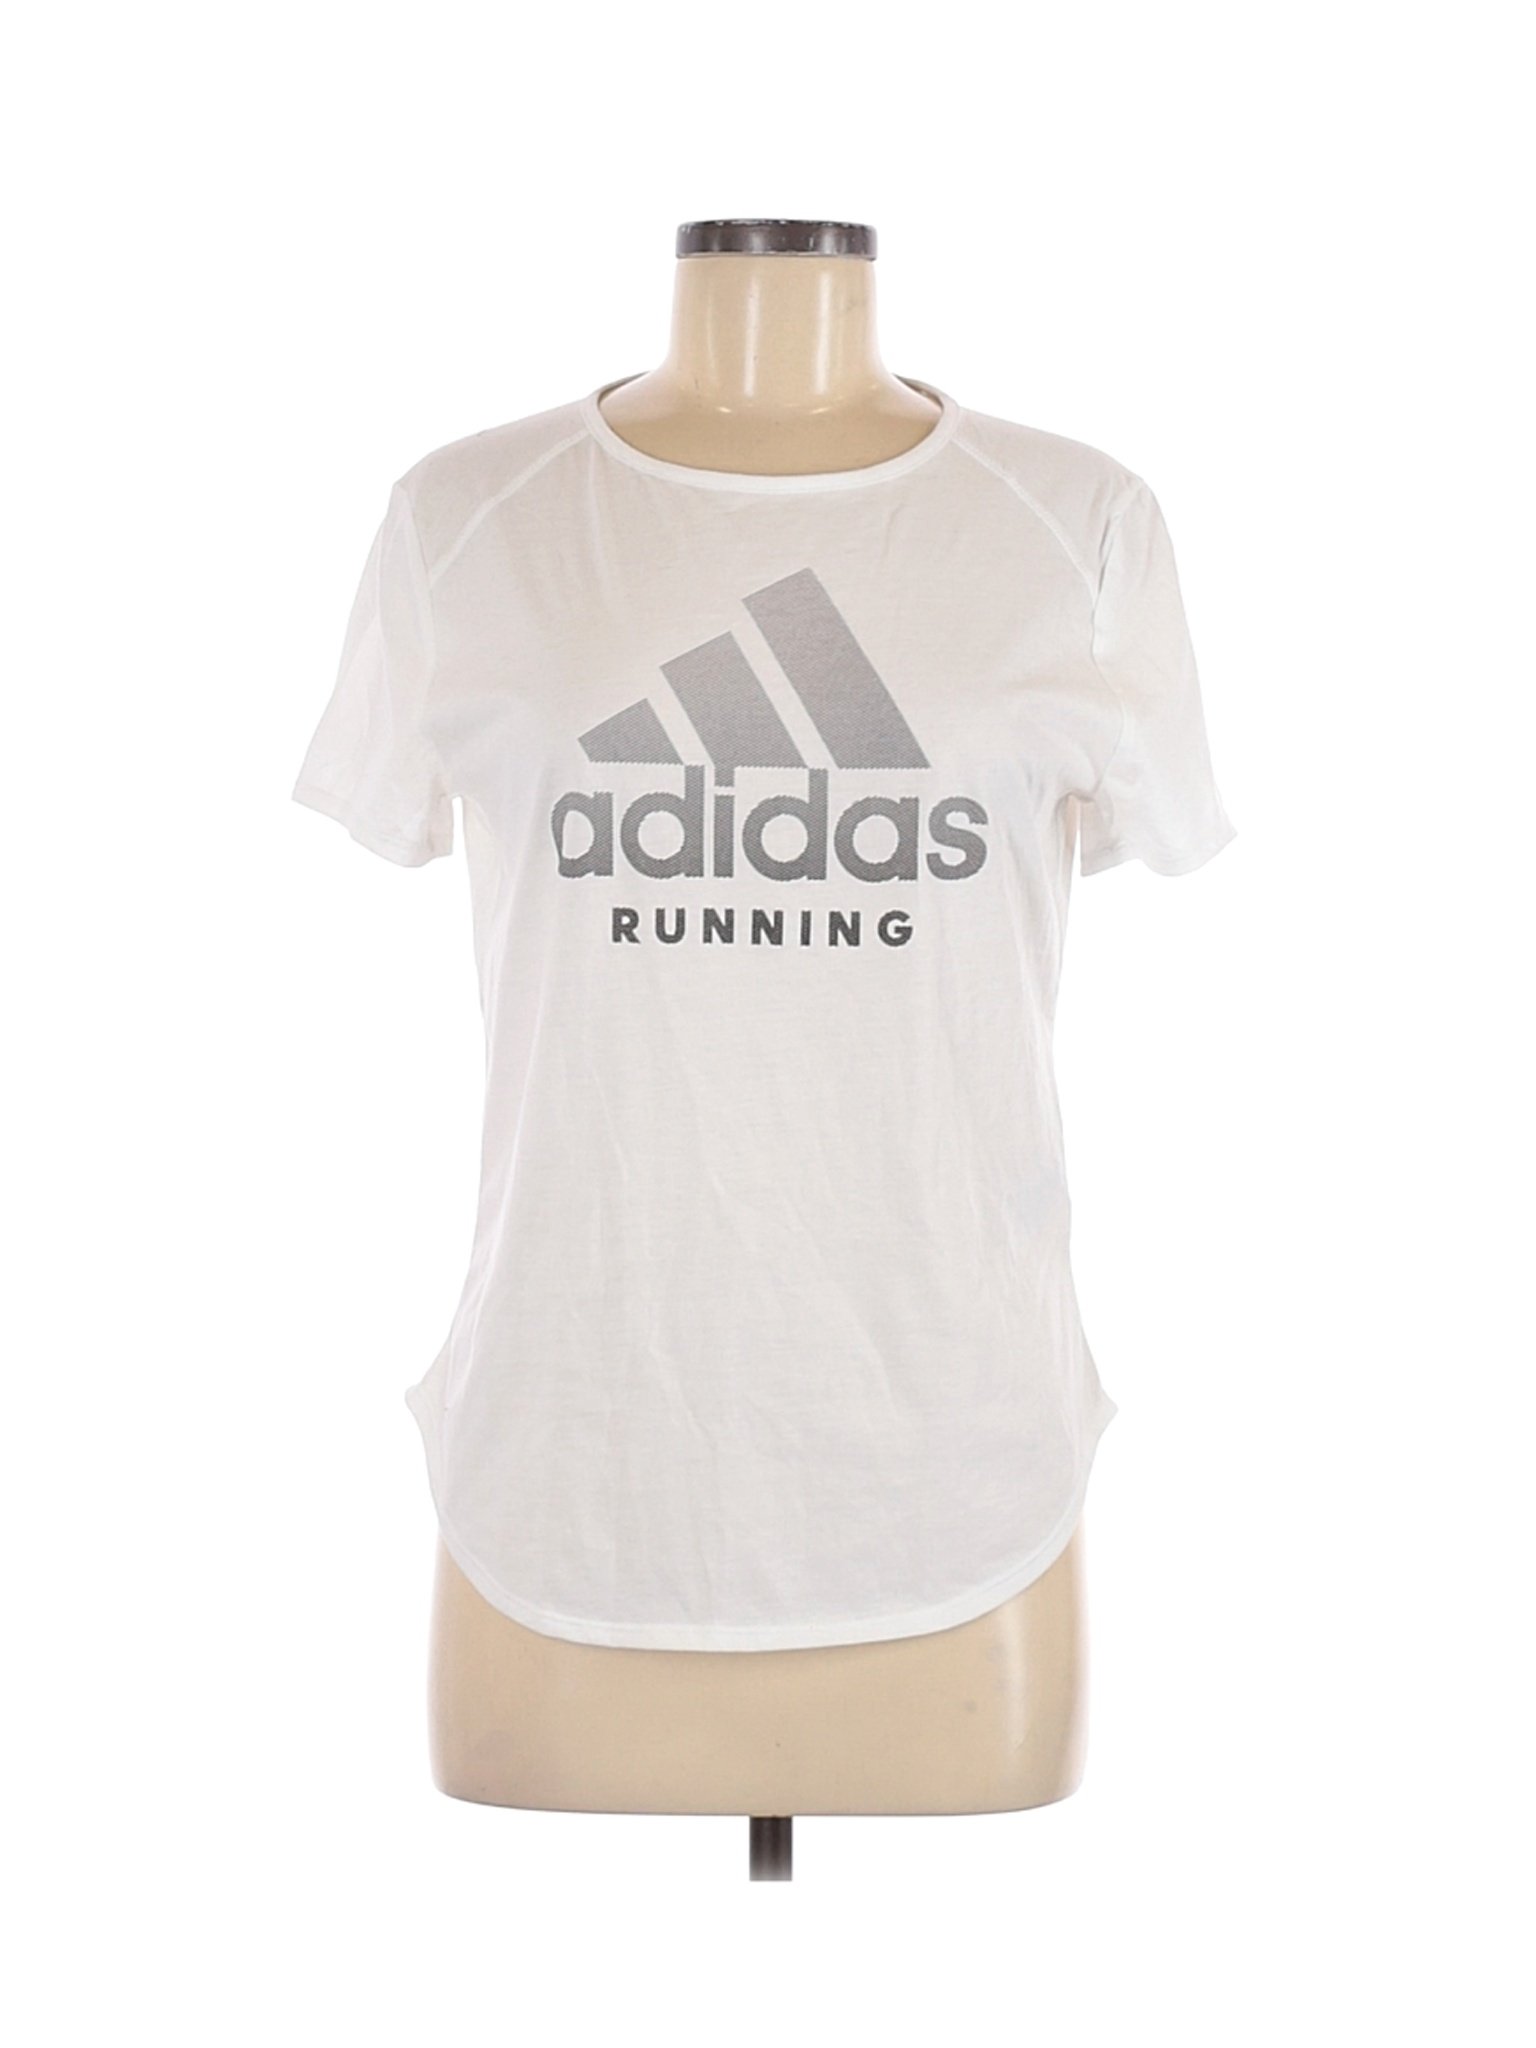 Adidas Women White Active T-Shirt M | eBay